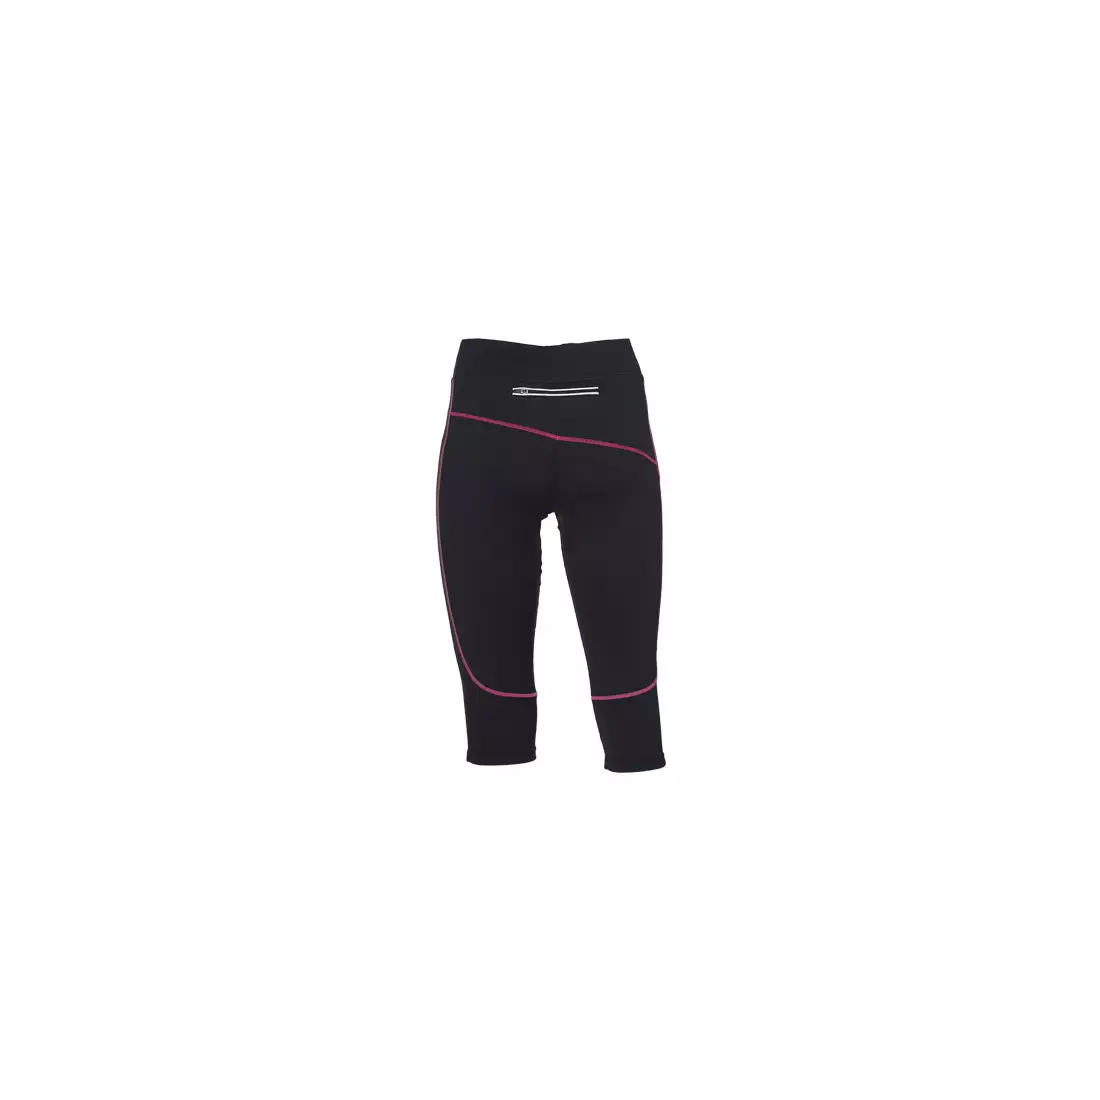 ROGELLI RUN MADILON - pantaloni scurți de alergare 3/4 damă - culoare: Negru și roz